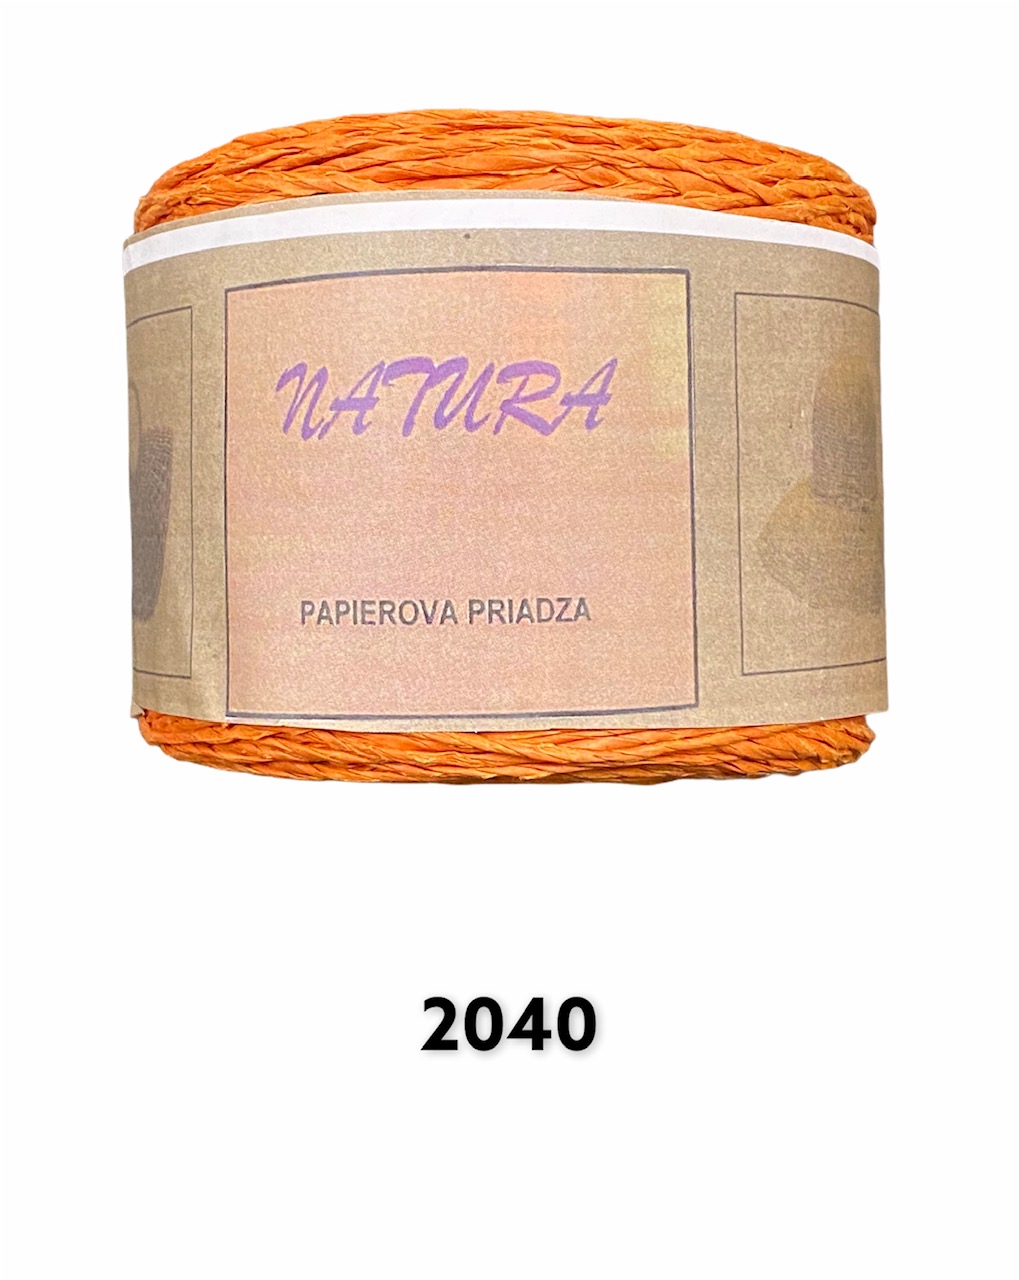 Natura 250g; 2040